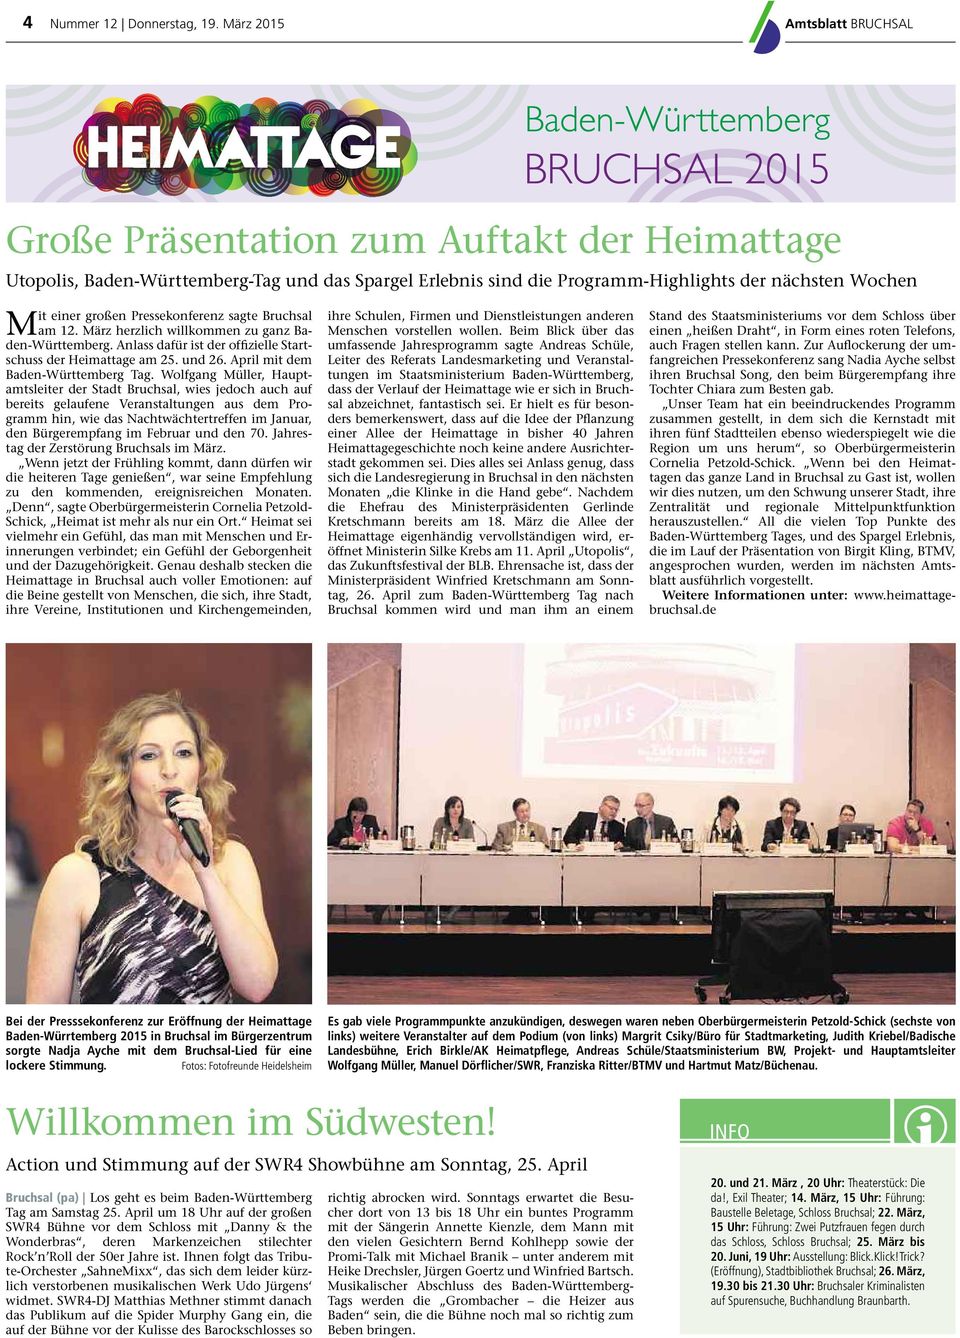 Pressekonferenz sagte Bruchsal am 12. März herzlich willkommen zu ganz Baden-Württemberg. Anlass dafür ist der ofﬁzielle Startschuss der Heimattage am 25. und 26. April mit dem Baden-Württemberg Tag.